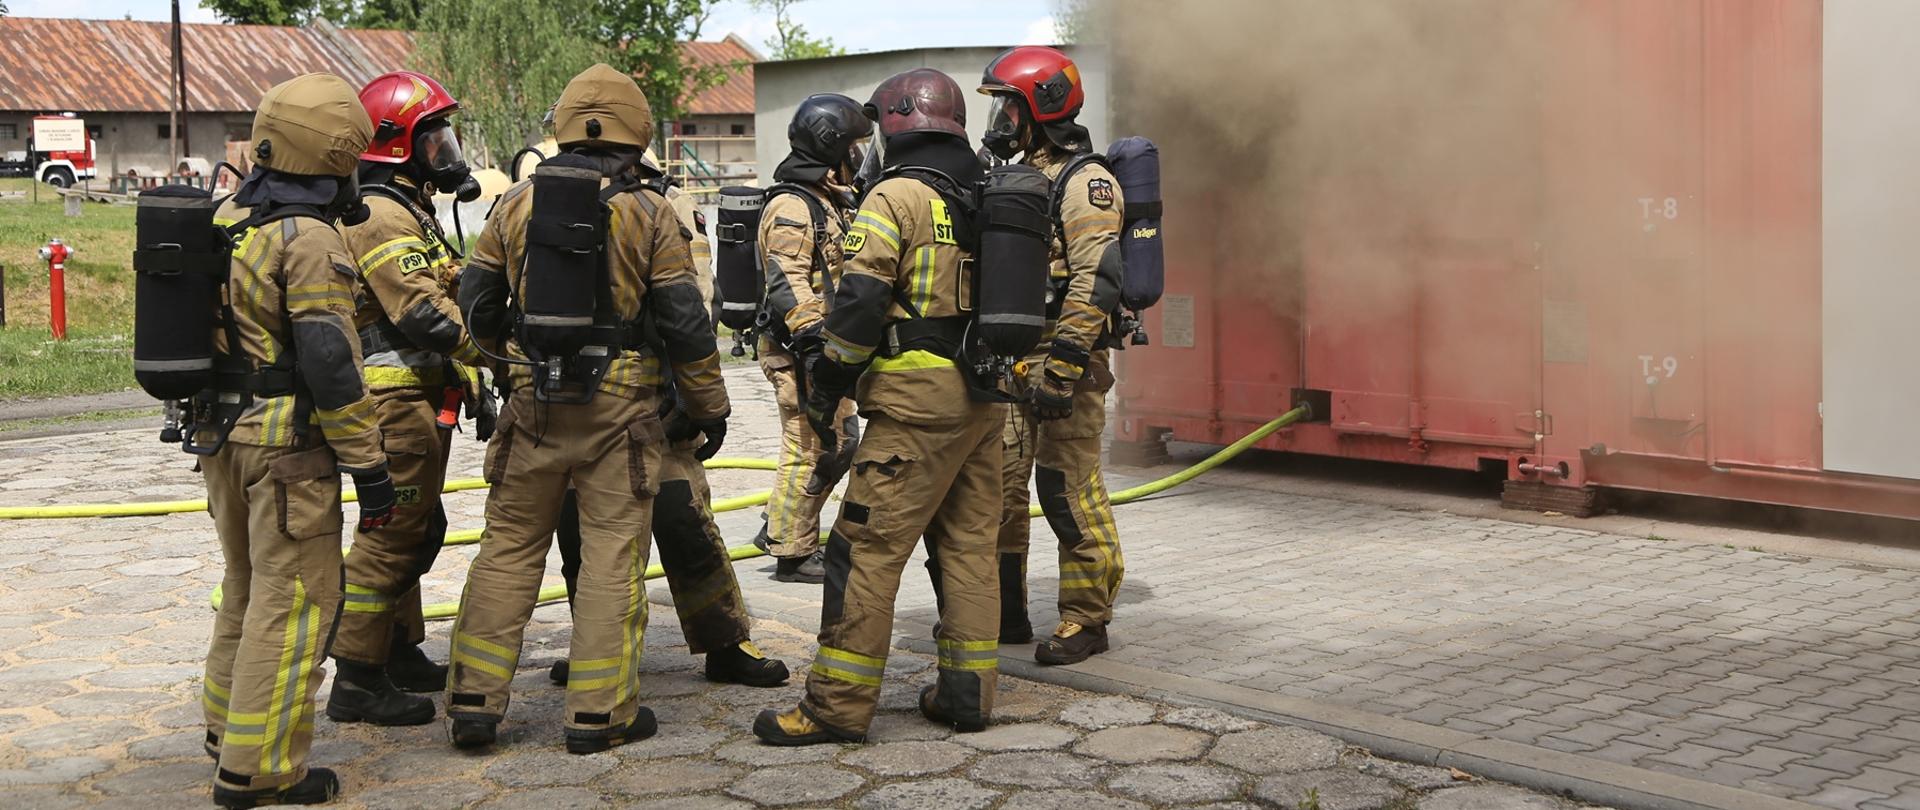 Po lewej strażacy w umundurowaniu gaśniczym, z założonymi butlami (siedem osób), po prawej kontener gaśniczy z którego wydobywa się dym